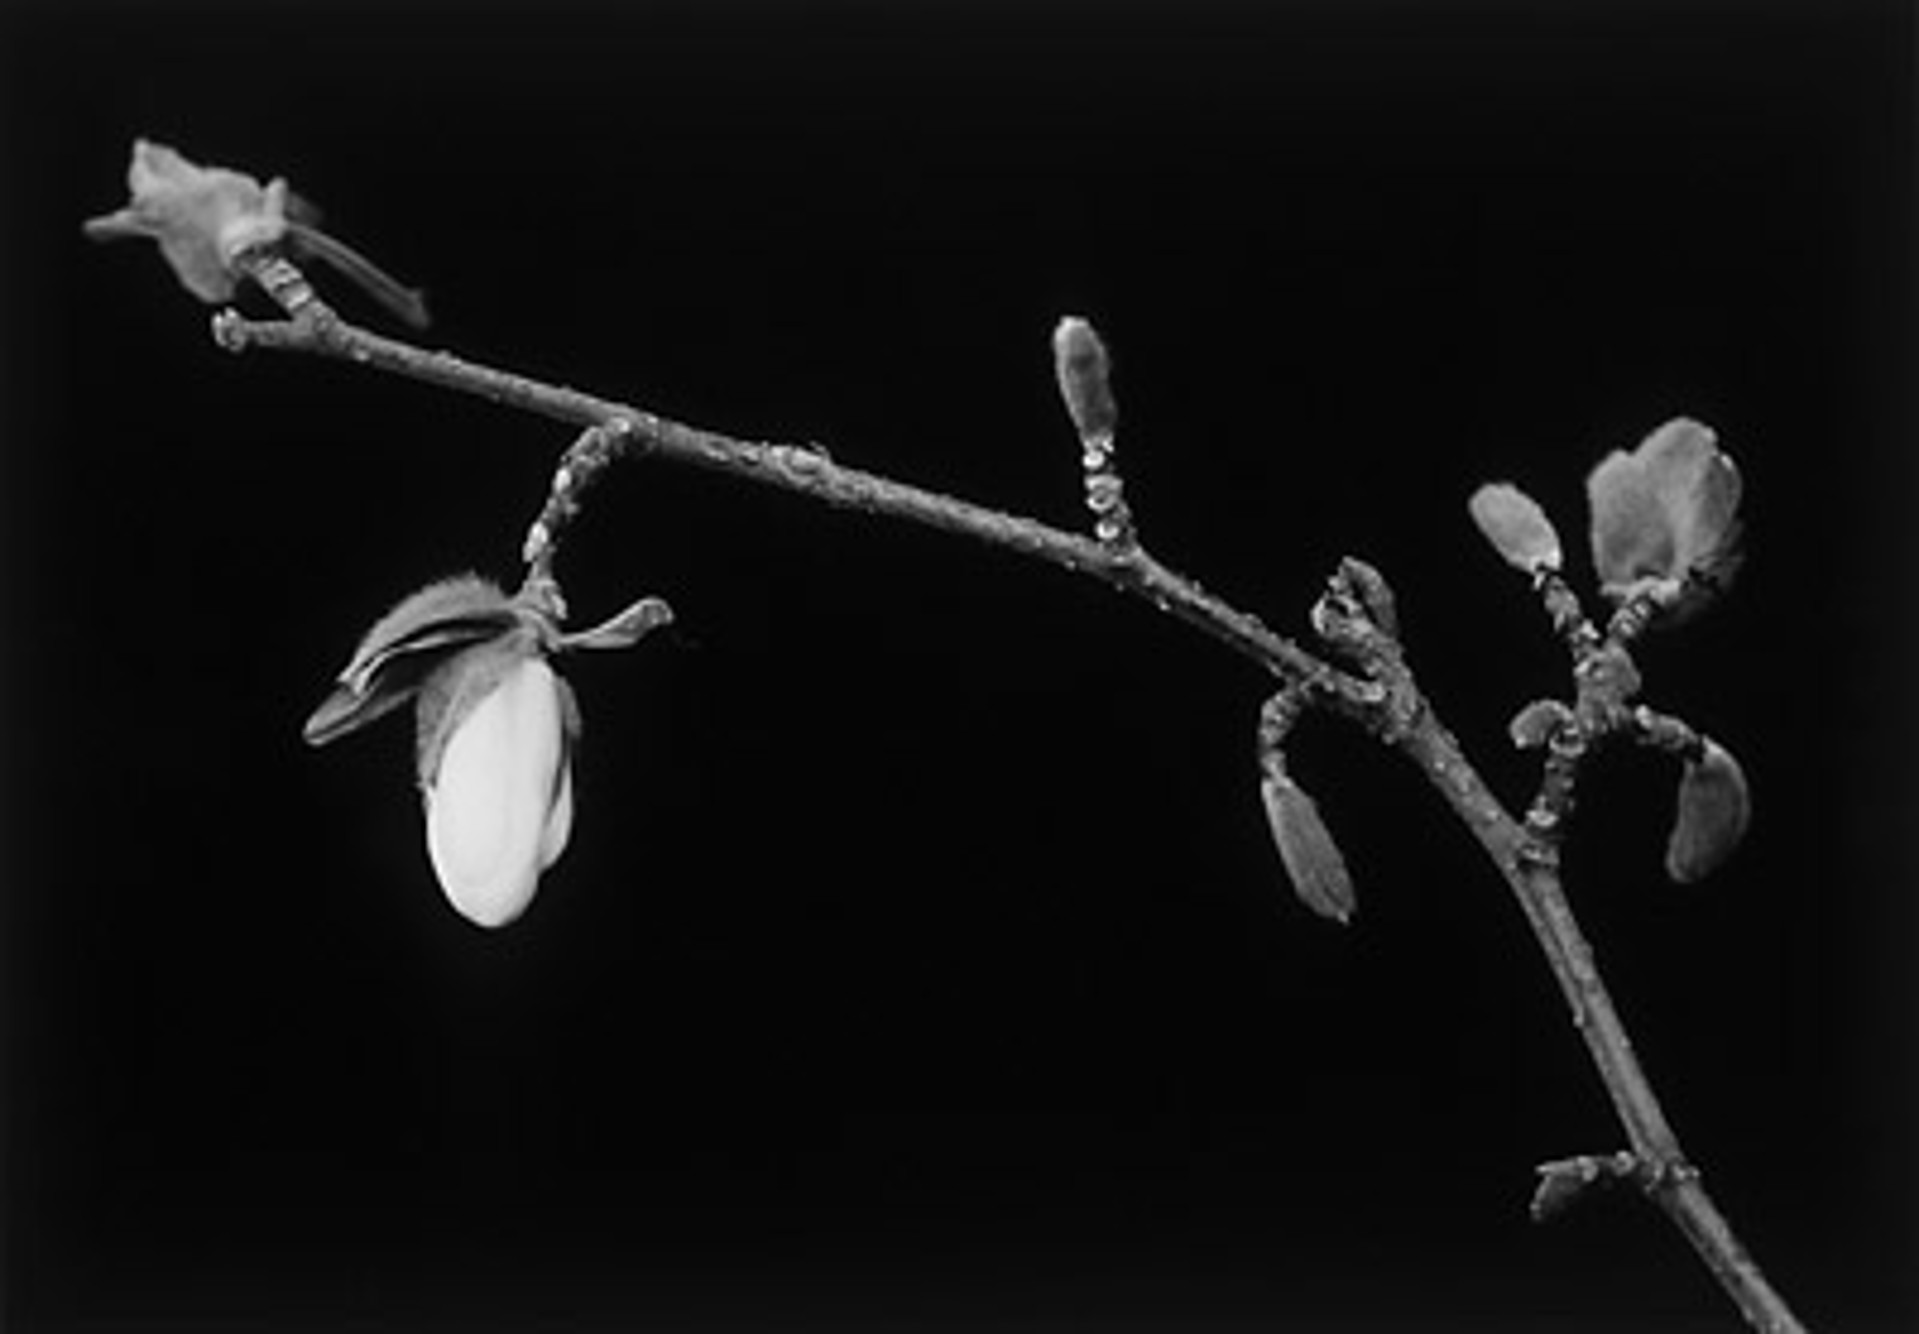 Magnolia Bud on Branch by MaryAnn Bushweller